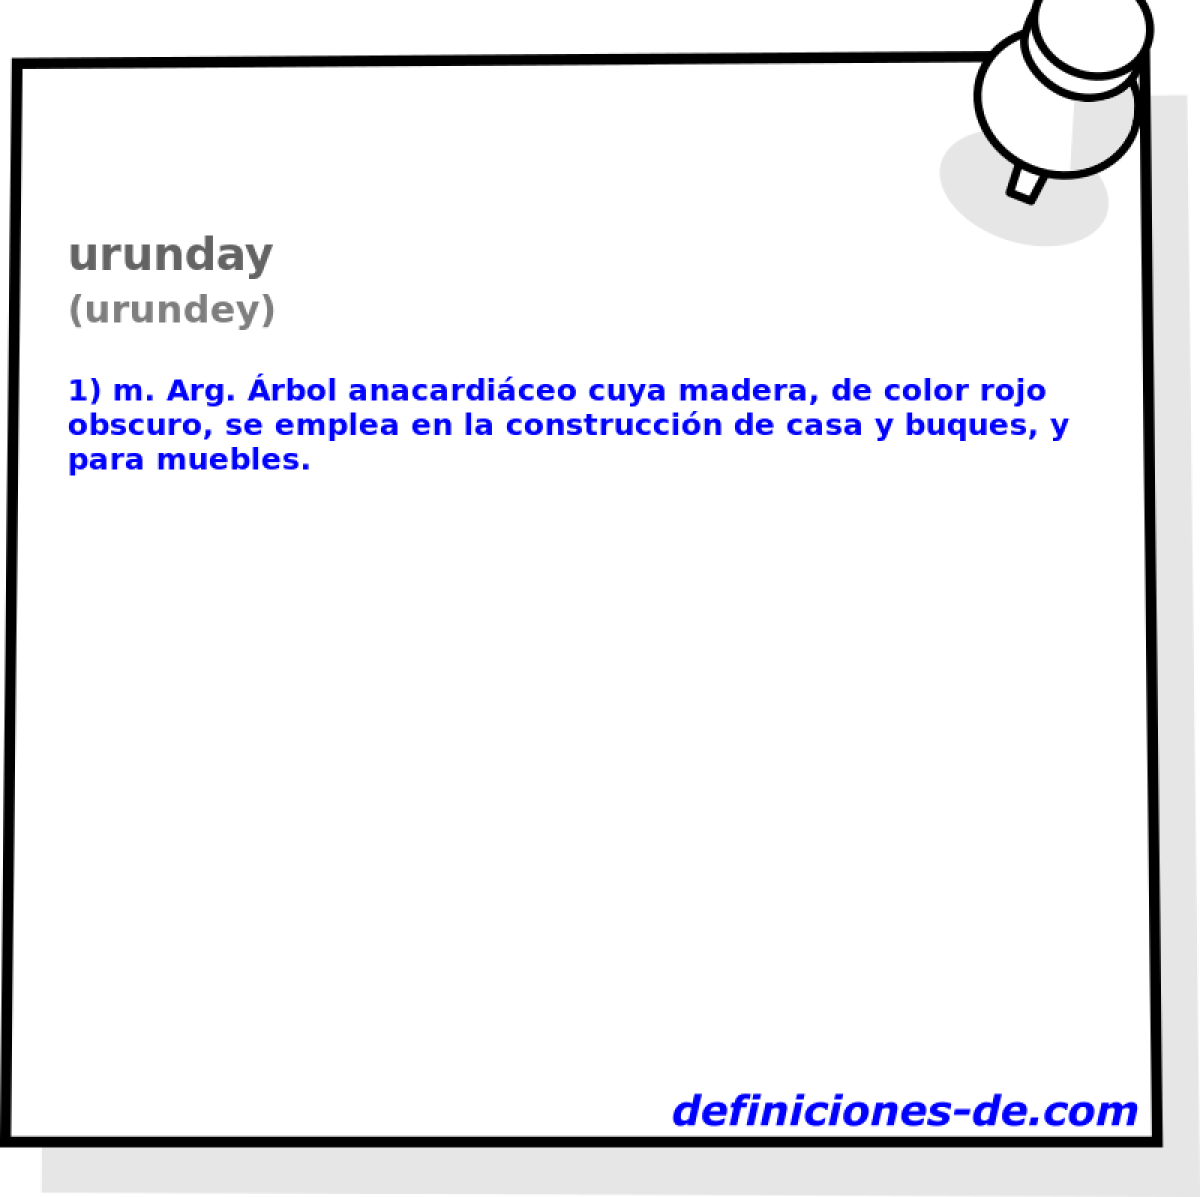 urunday (urundey)